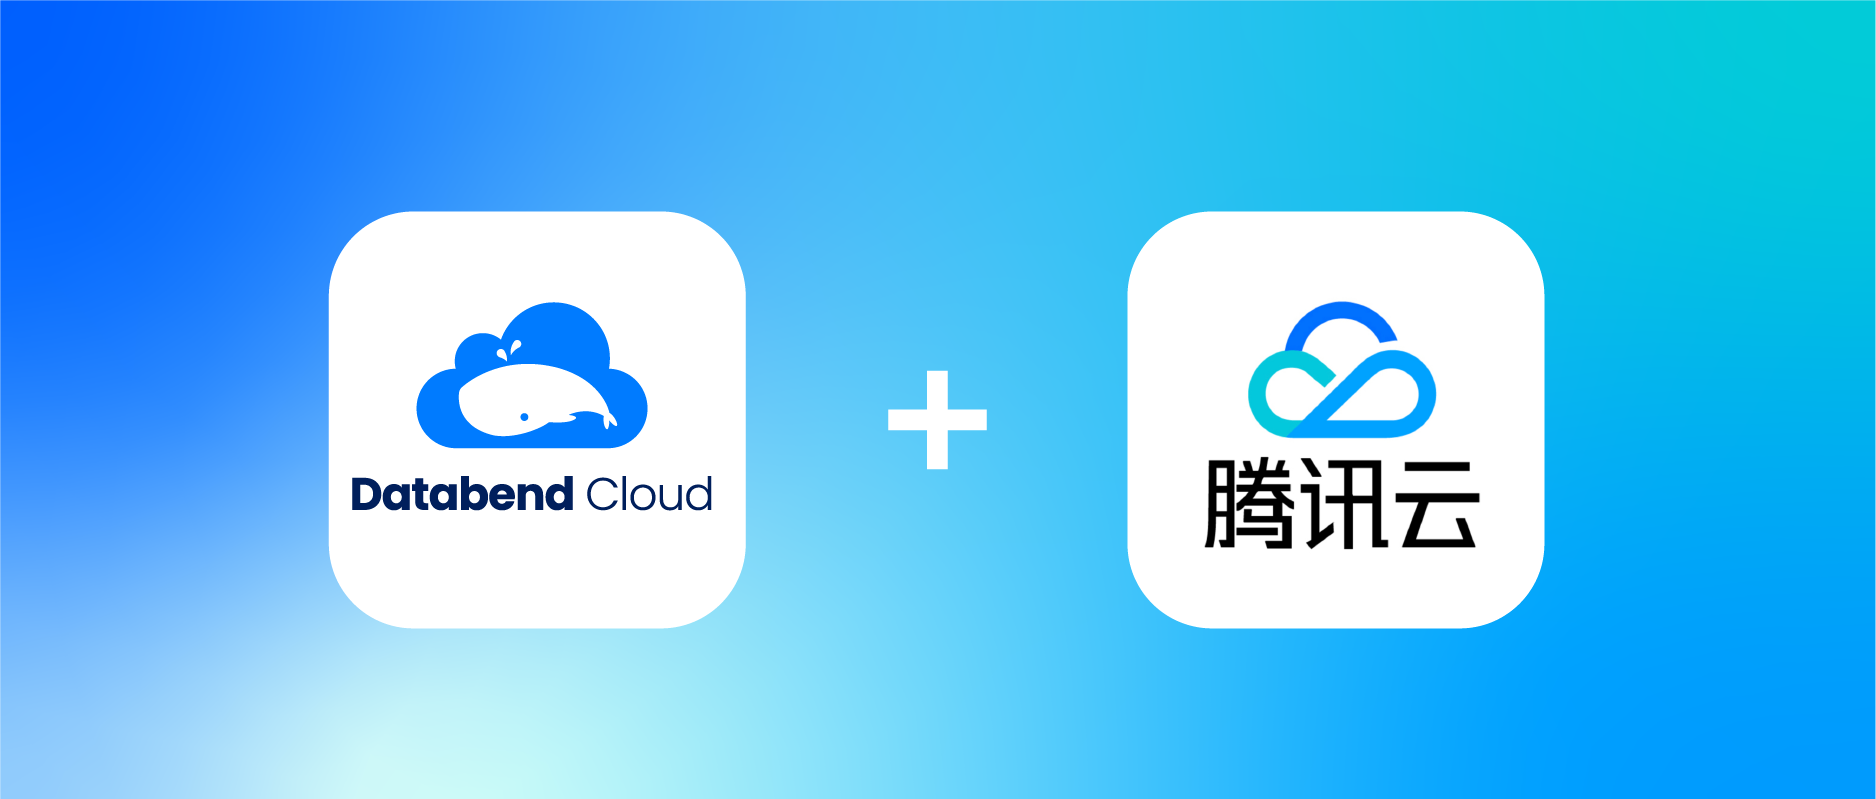 祝贺！Databend Cloud 和腾讯云达成合作